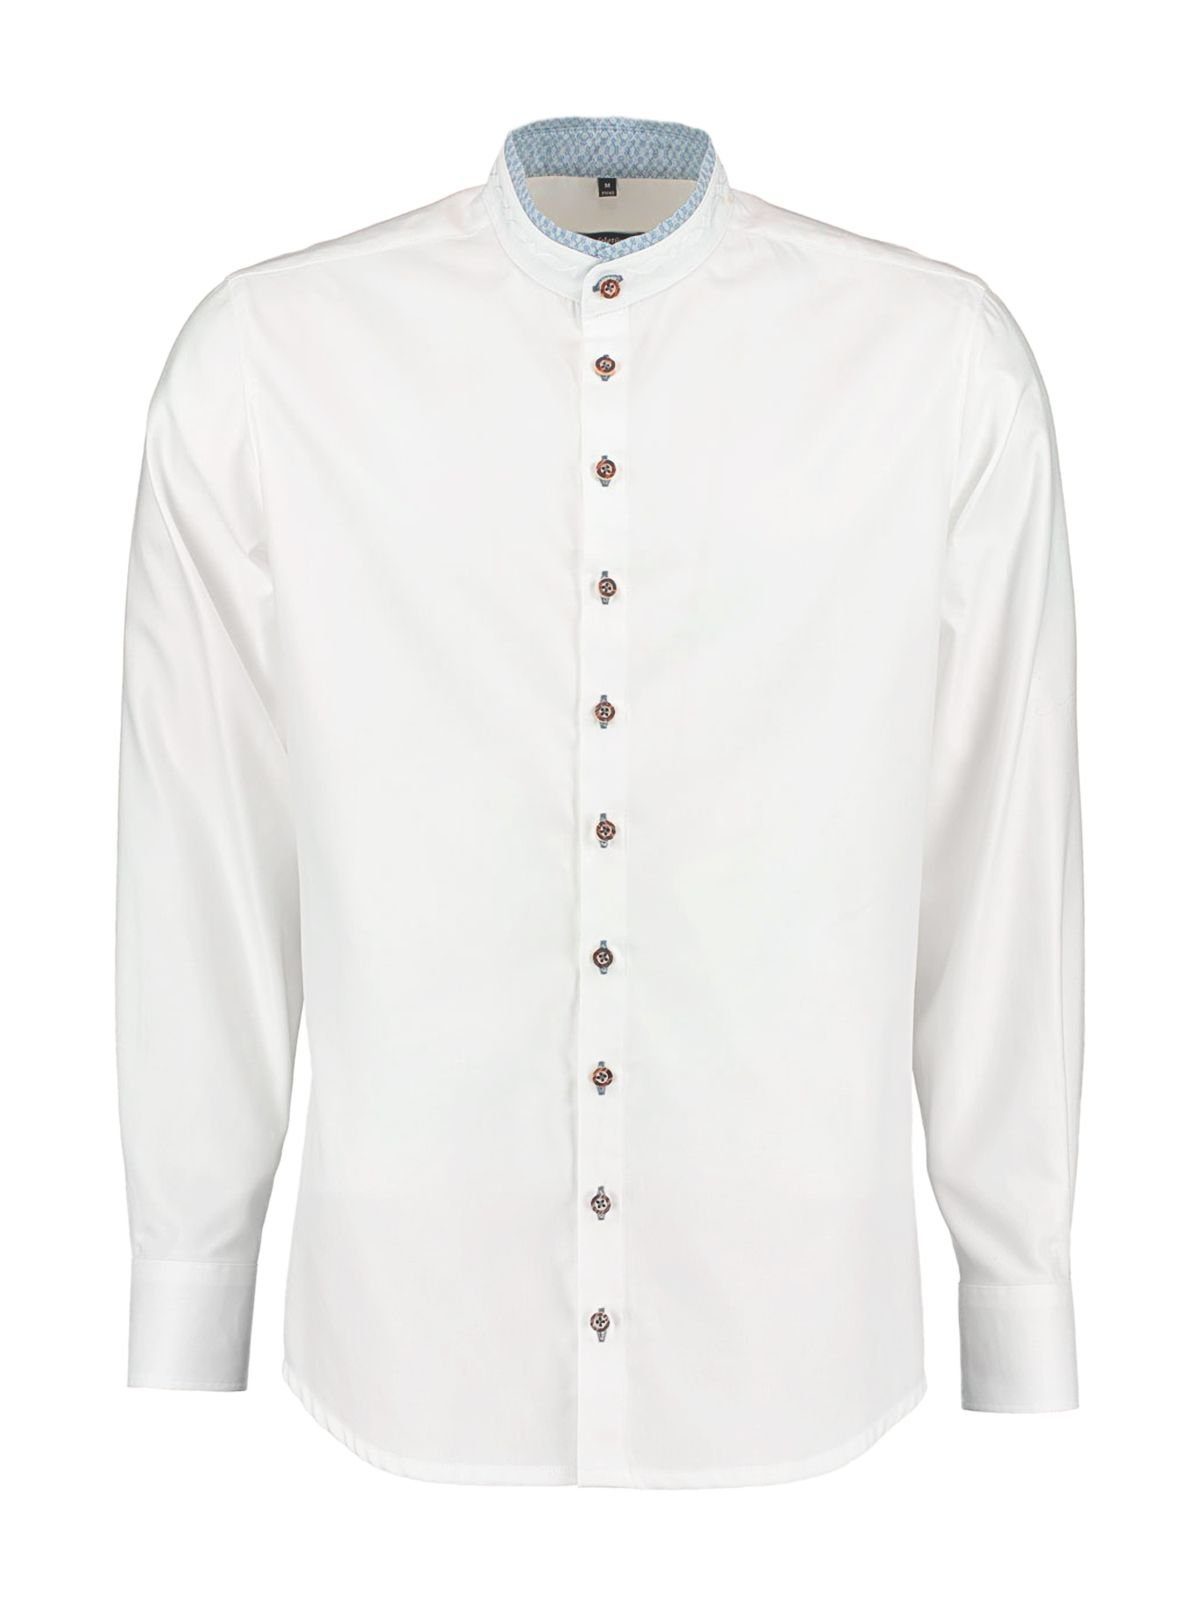 Gipfelstürmer Trachtenhemd Hemd Stehkragen 420002-4119-145 weiß marine (Slim | Trachtenhemden